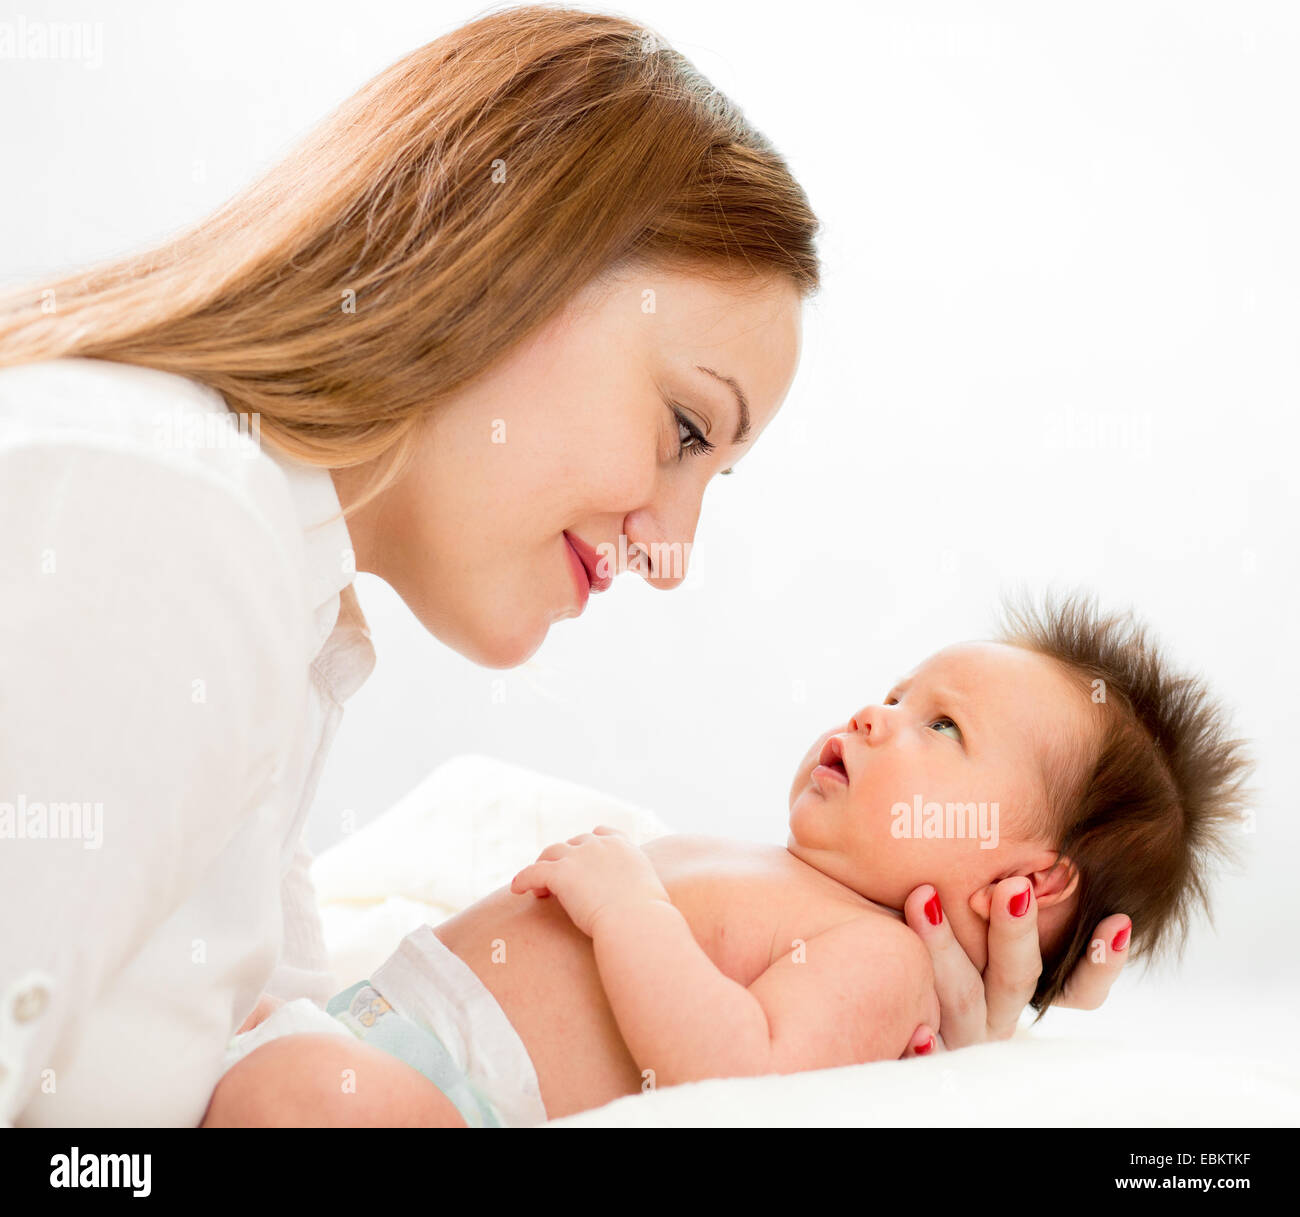 Heureuse mère avec son nouveau-né Banque D'Images